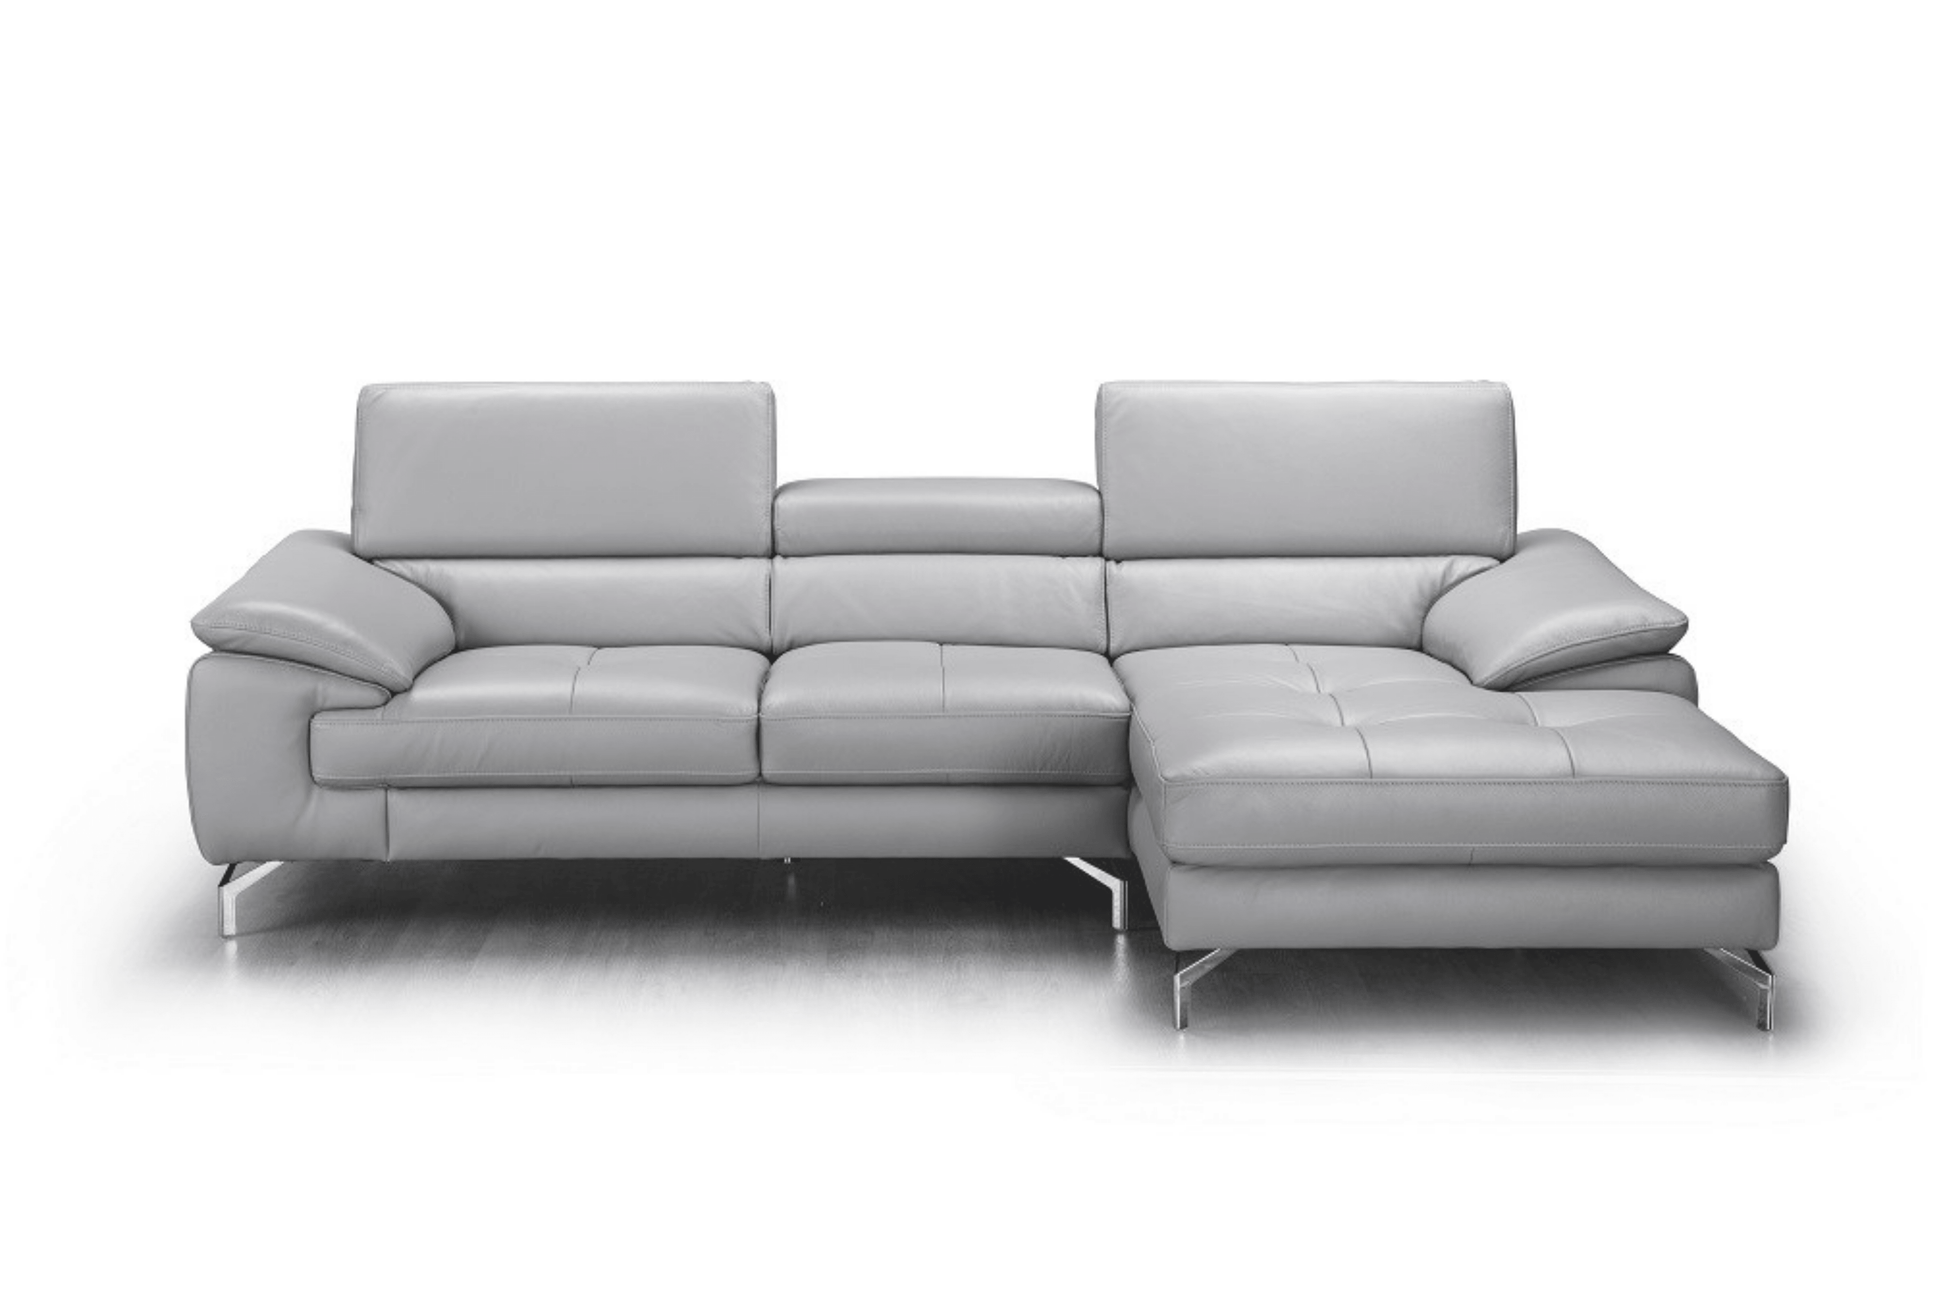 Liam Premium Leather Sectional - Venini Furniture 